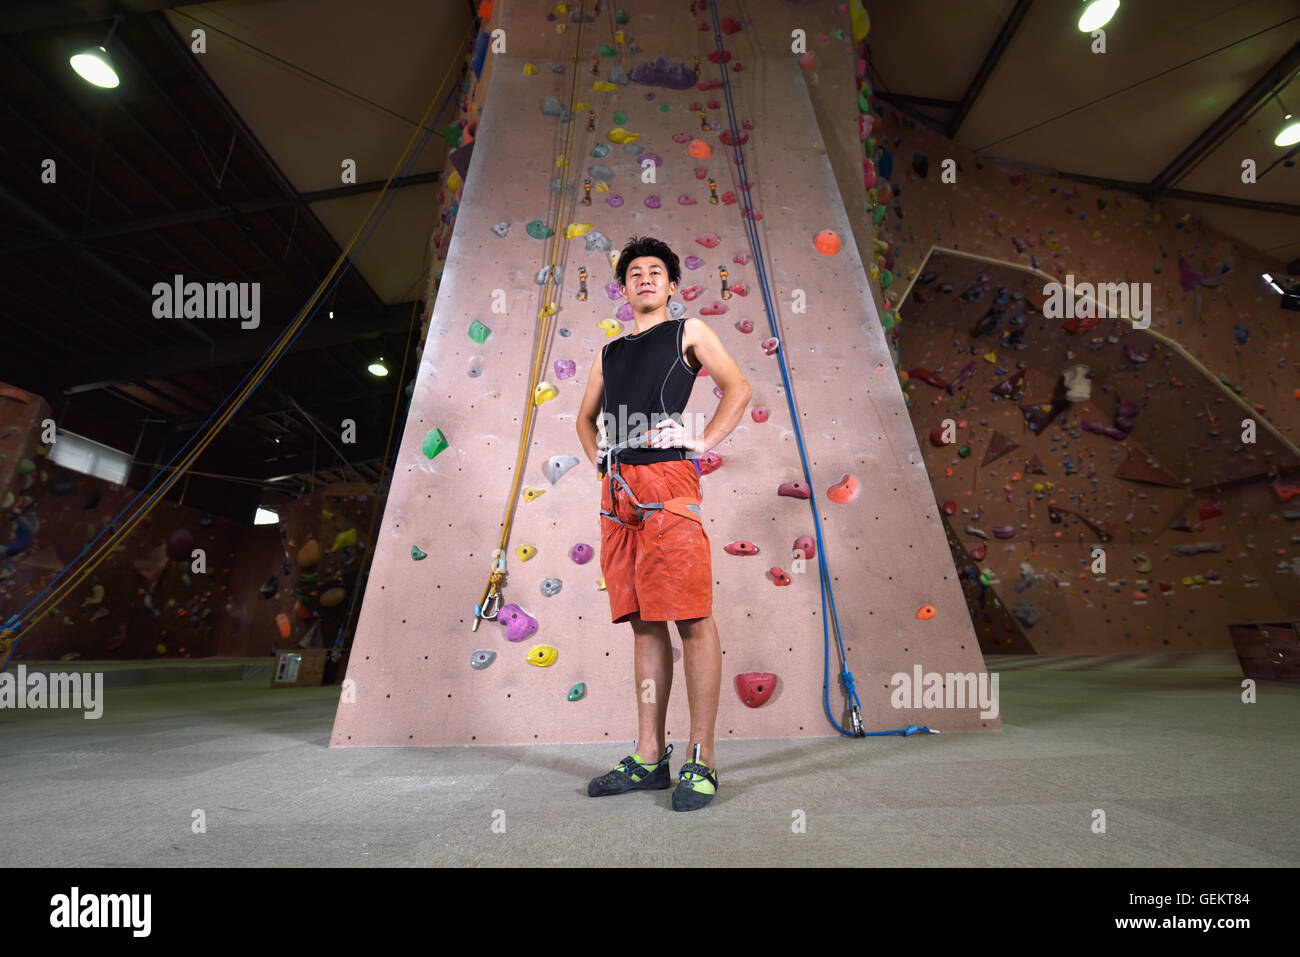 Athlète escalade japonais s'apprête à escalader le mur de sport Banque D'Images